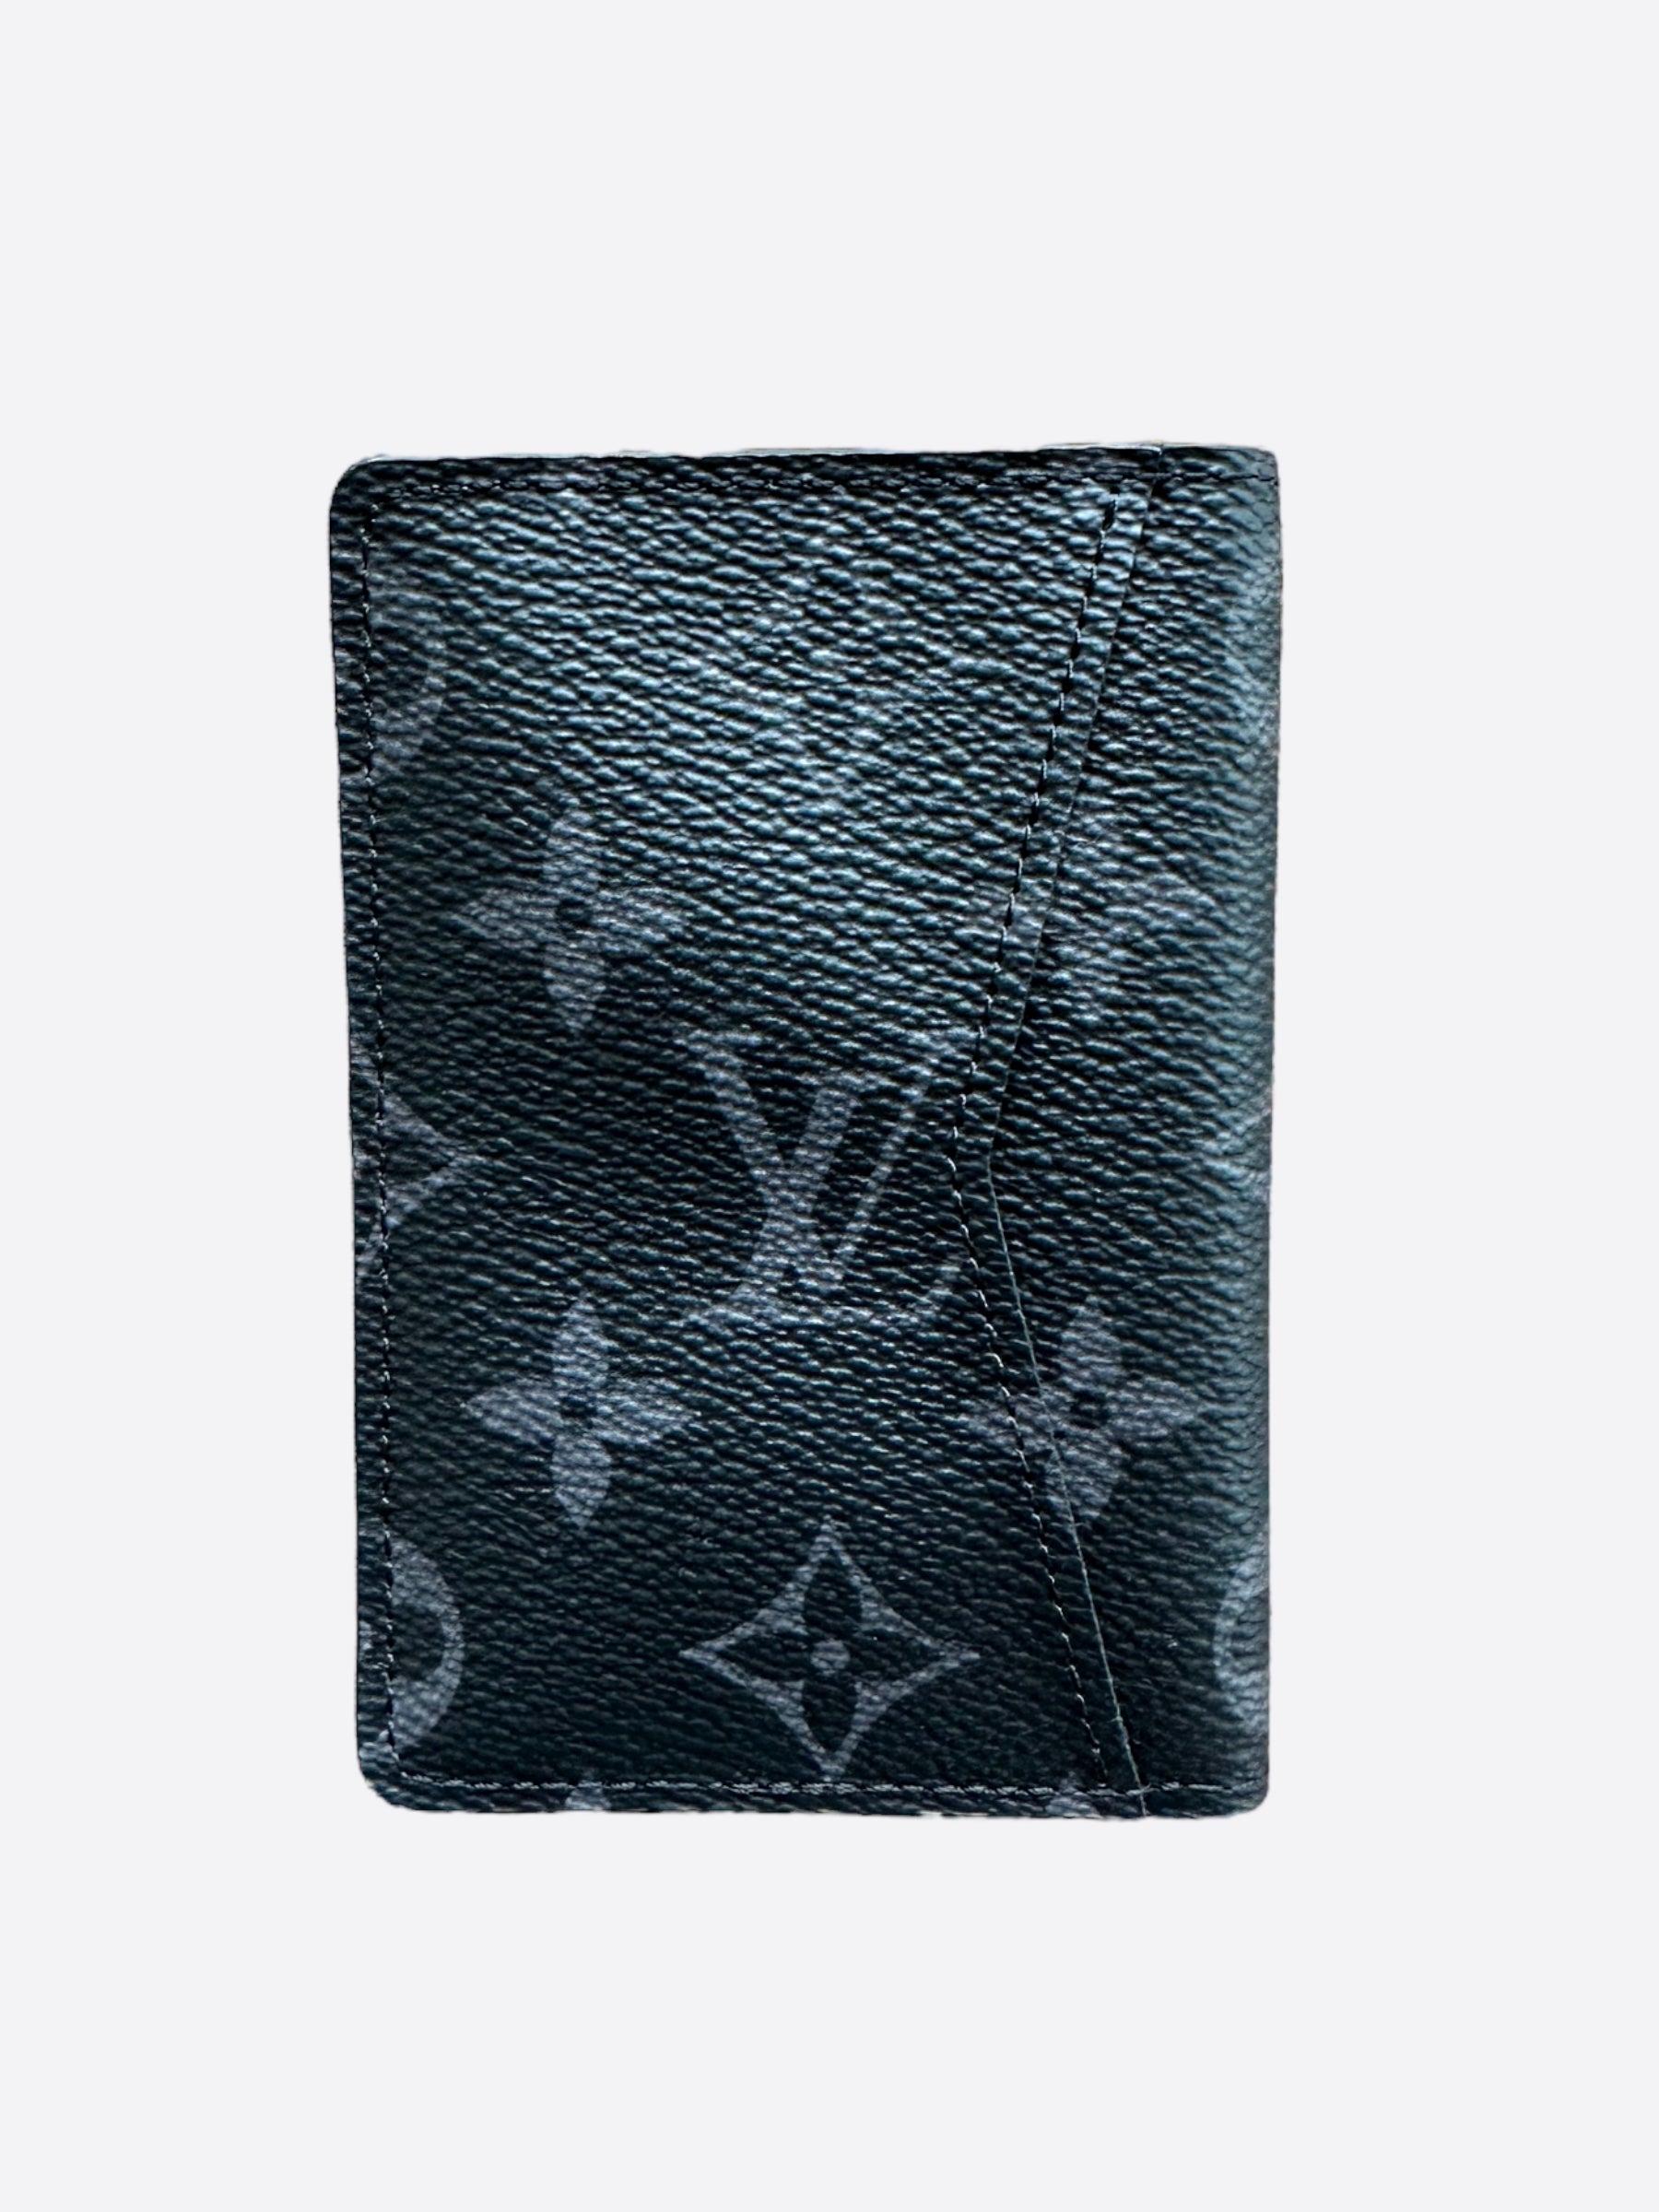 Louis Vuitton Limited Edition Monogram Canvas Monogram Eclipse